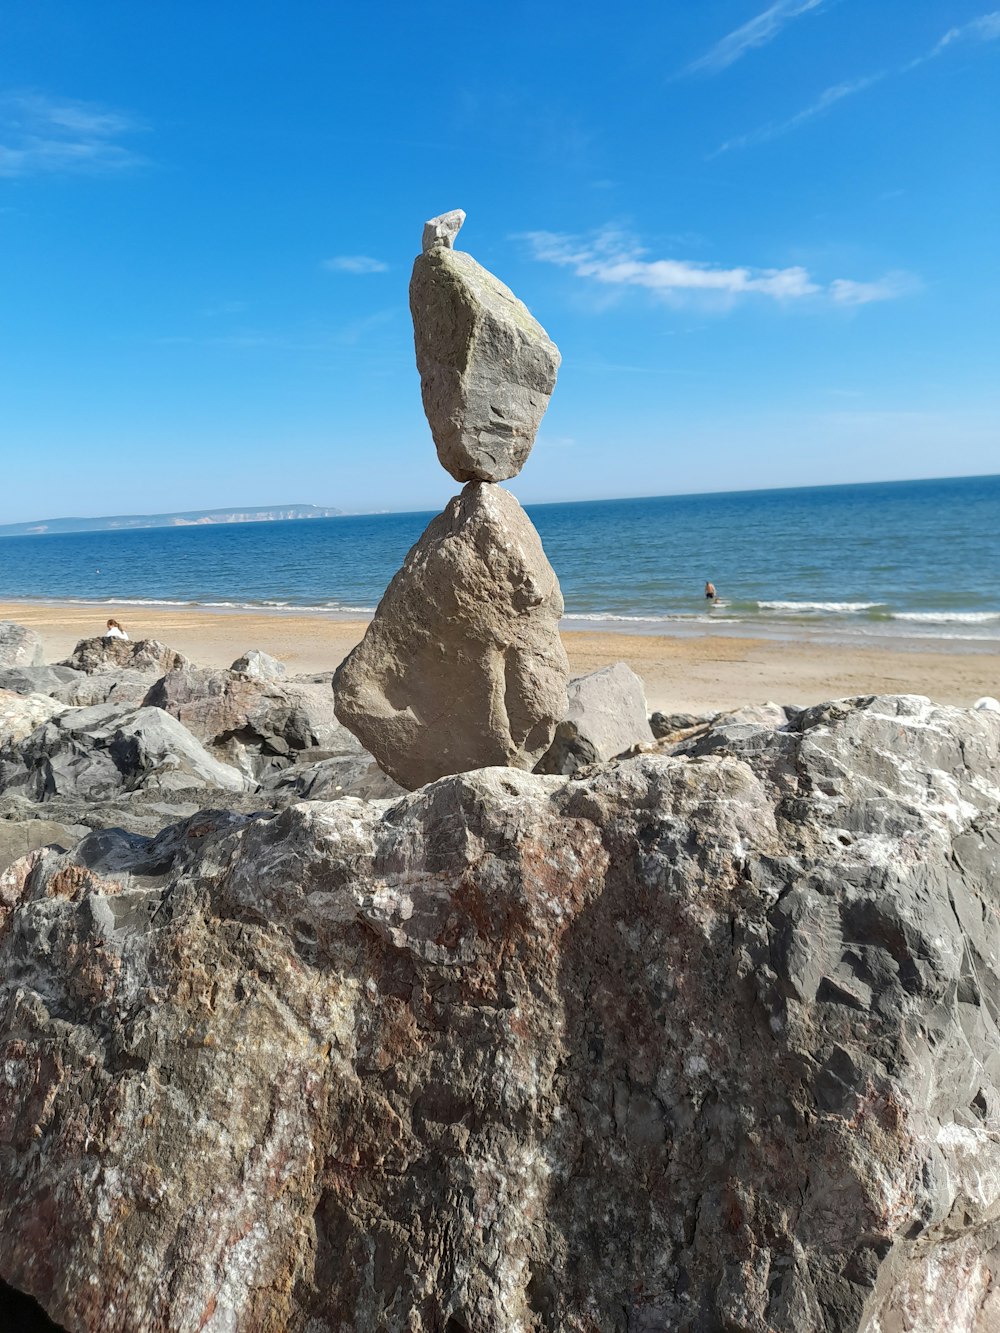 a rock on a beach